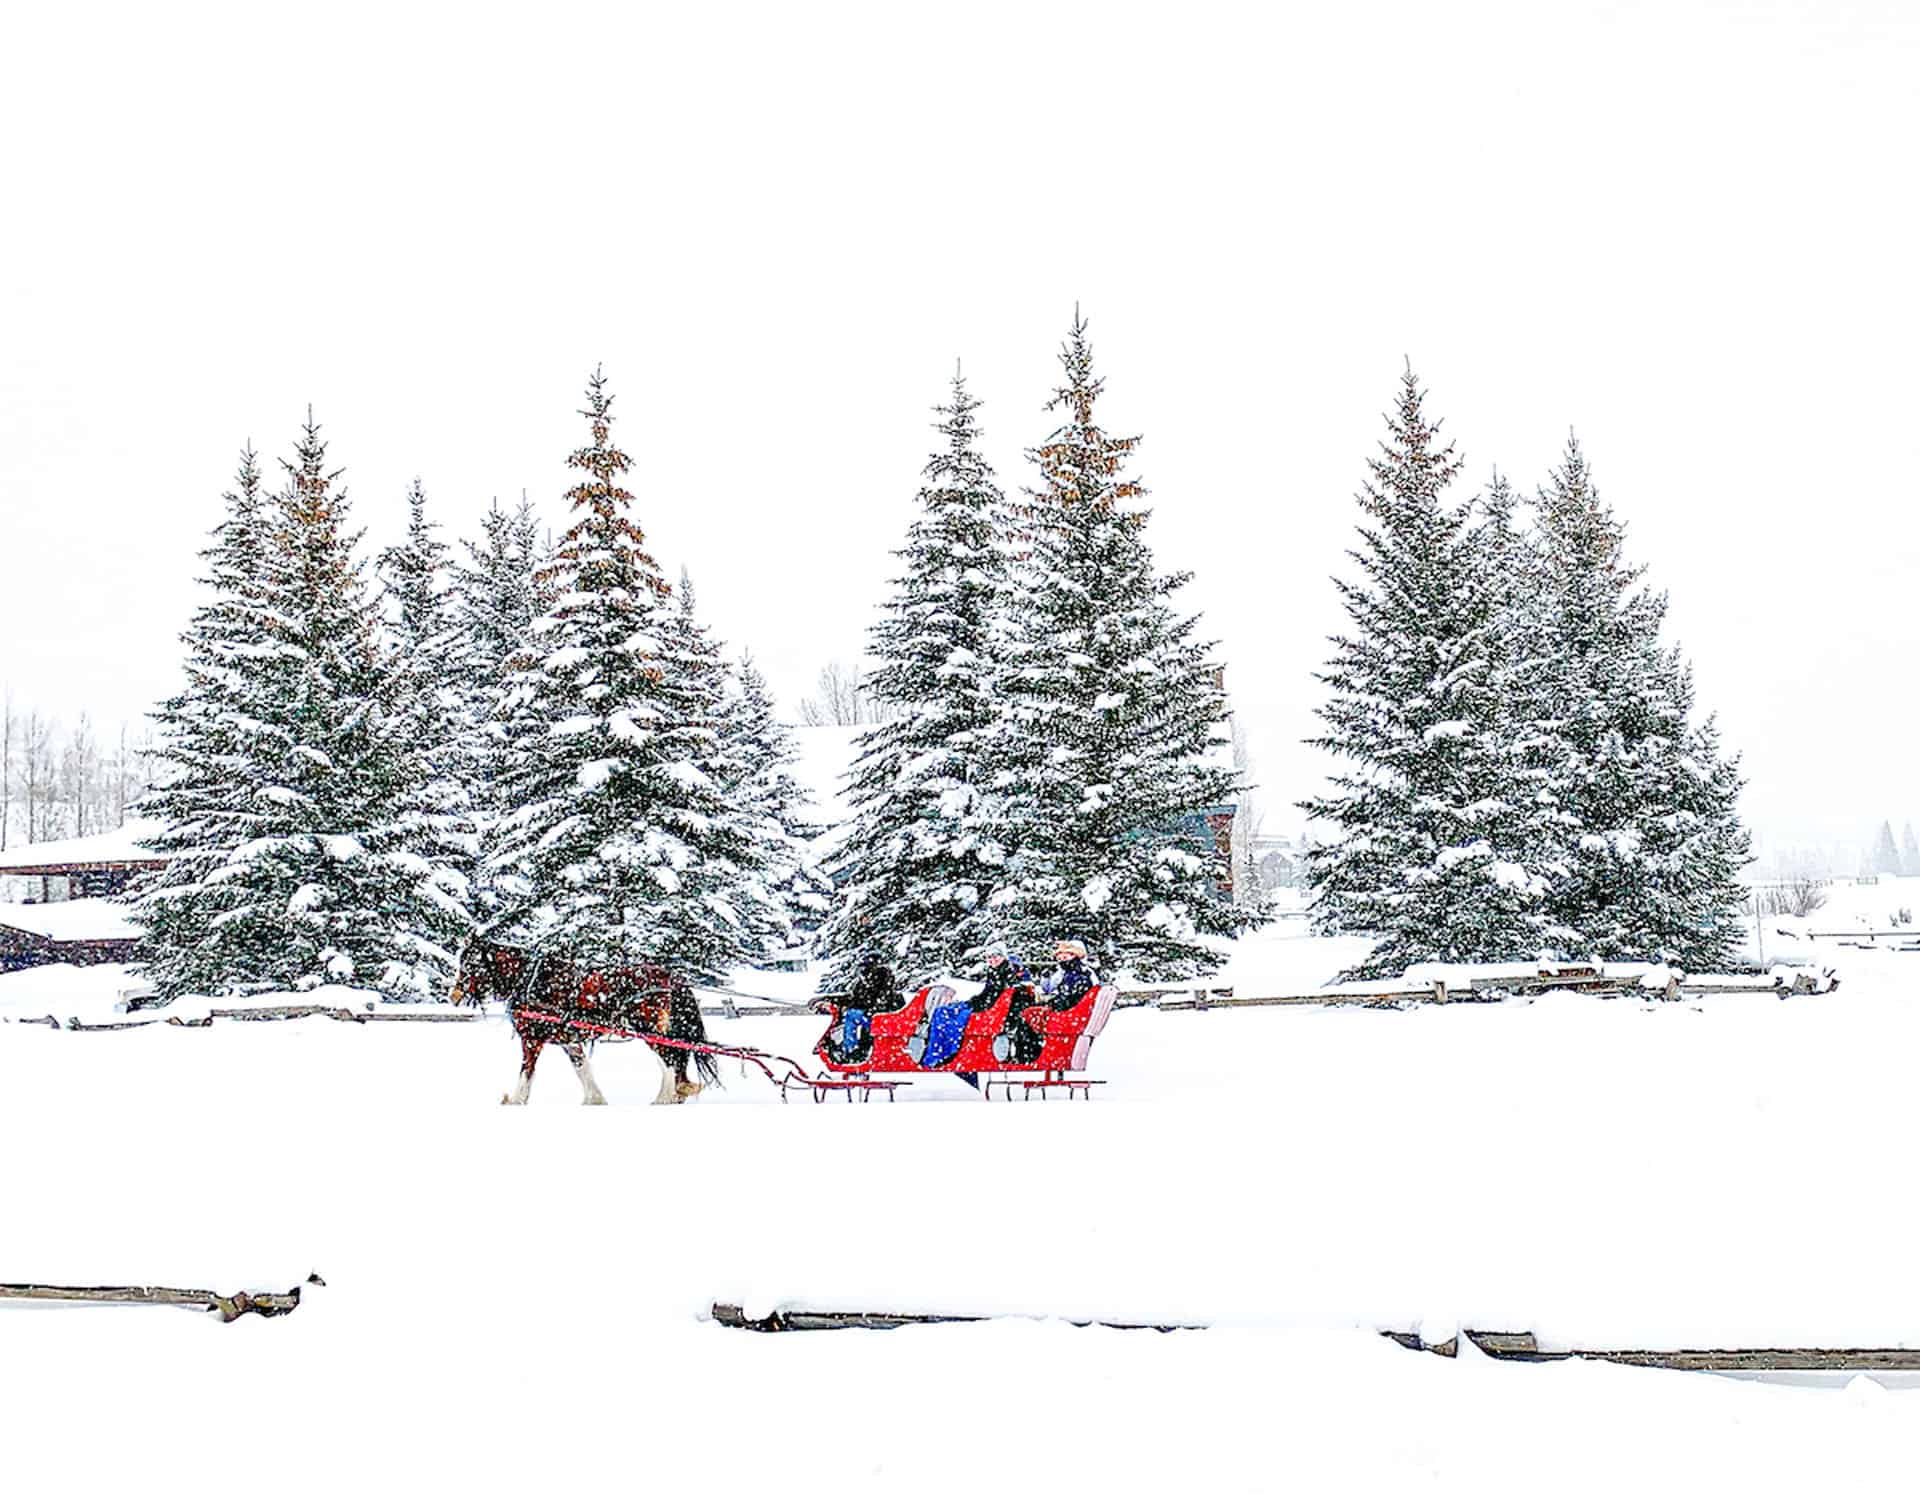 colorado in winter sleigh rides